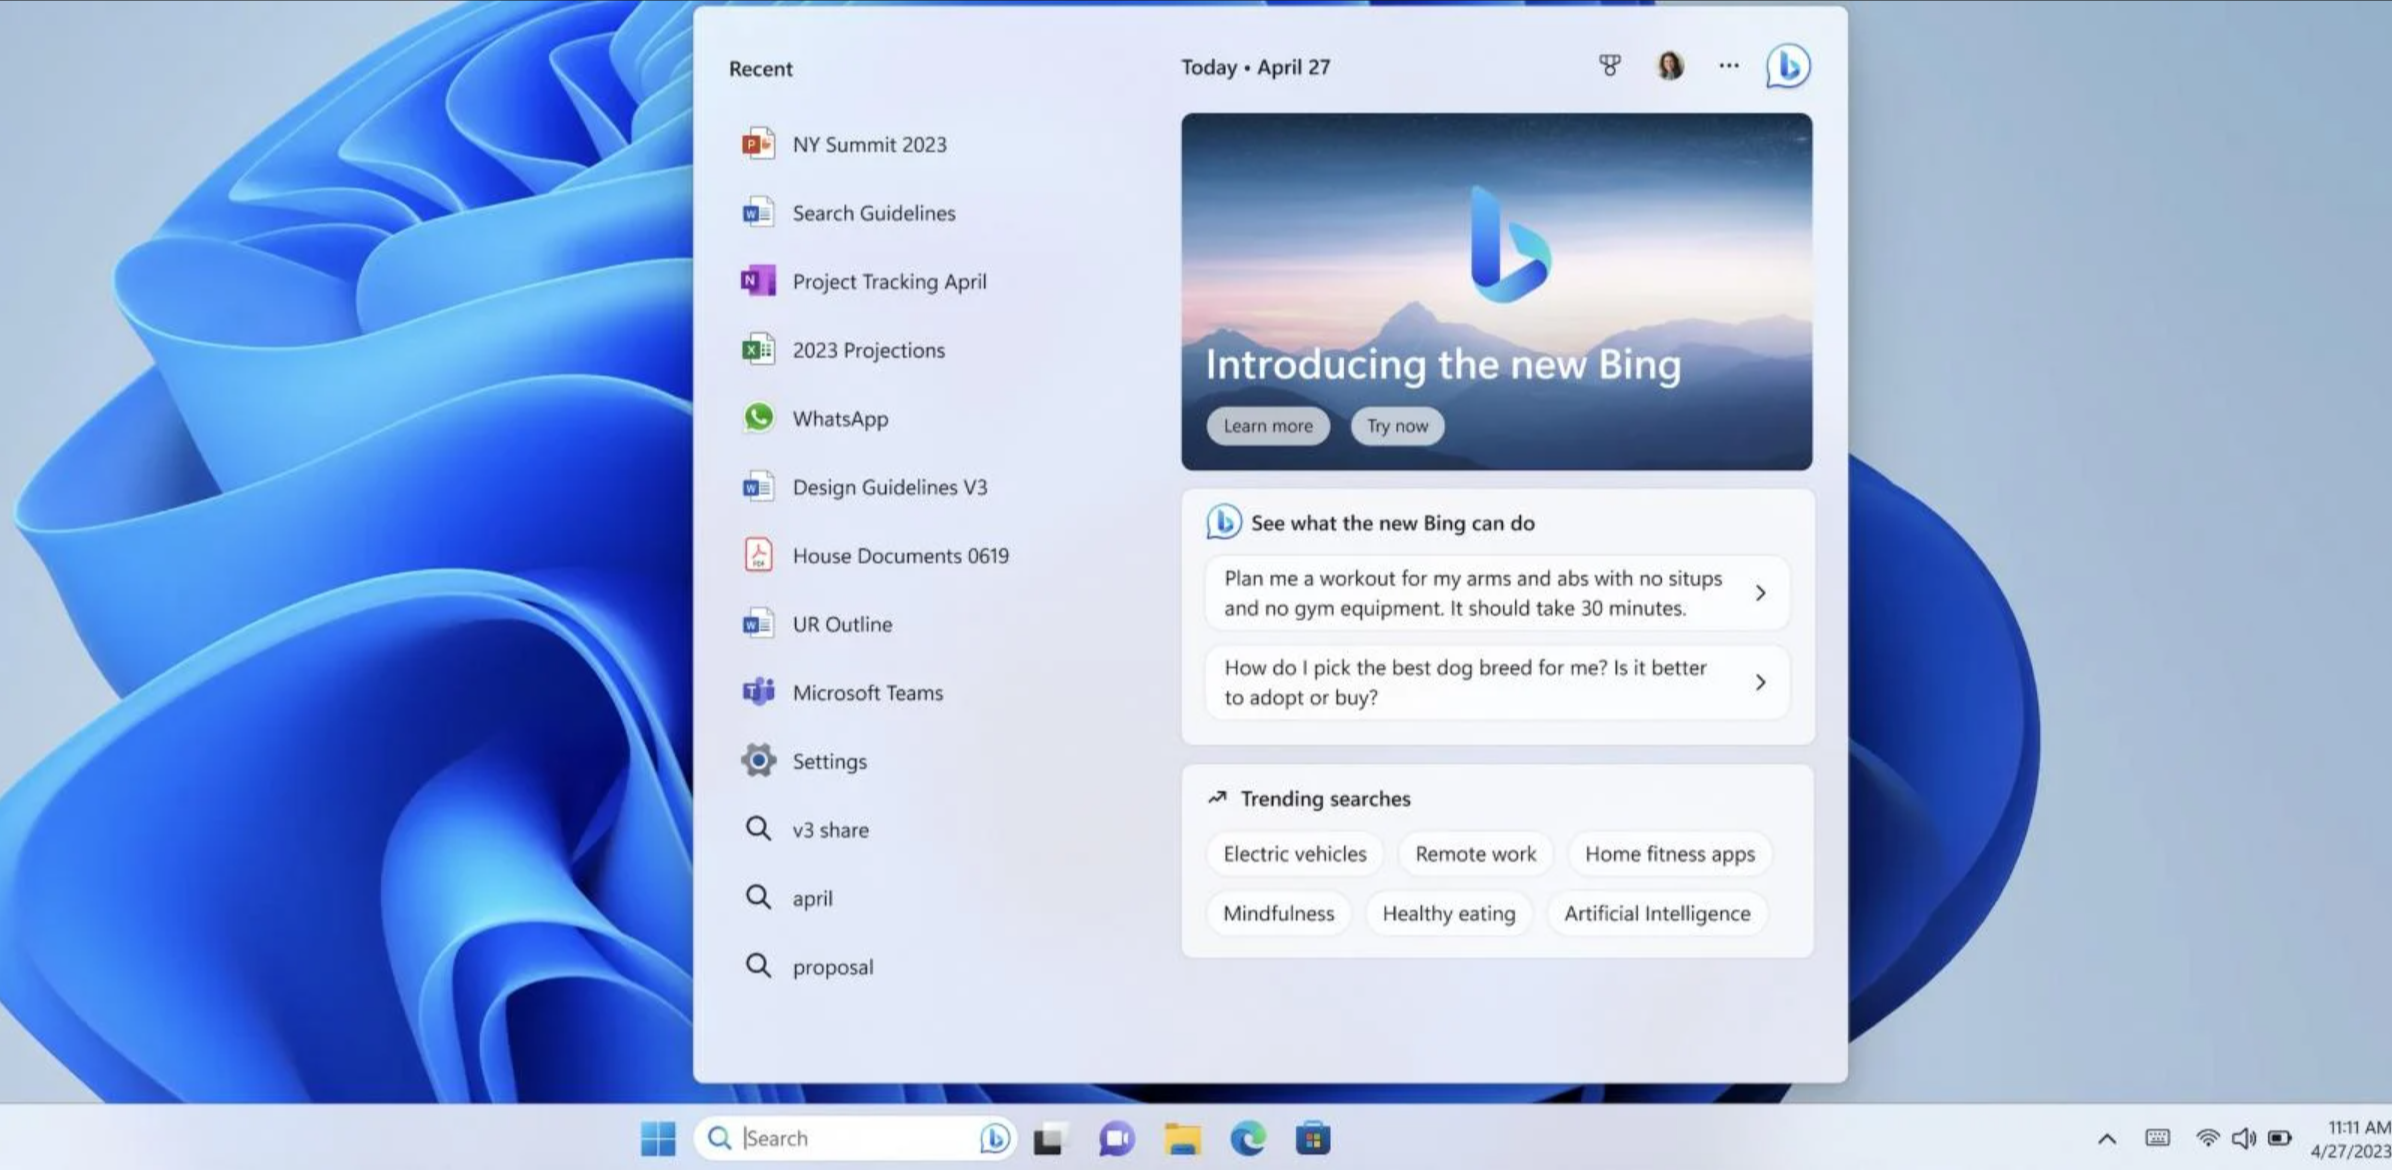 Bing Chat in Windows 11 taskbar. Source: Microsoft